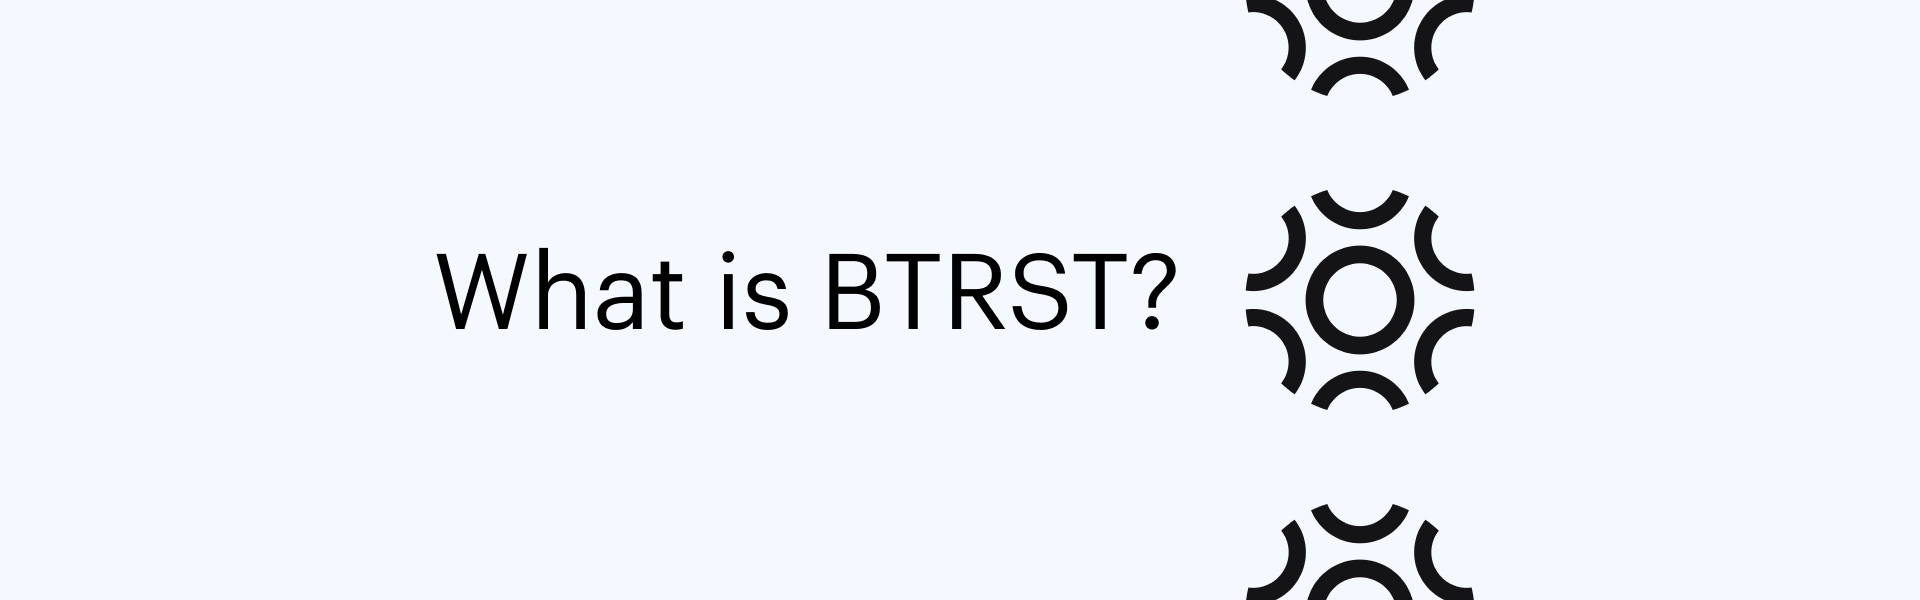 What-is-BTRST-Braintrust-Blog-Banner